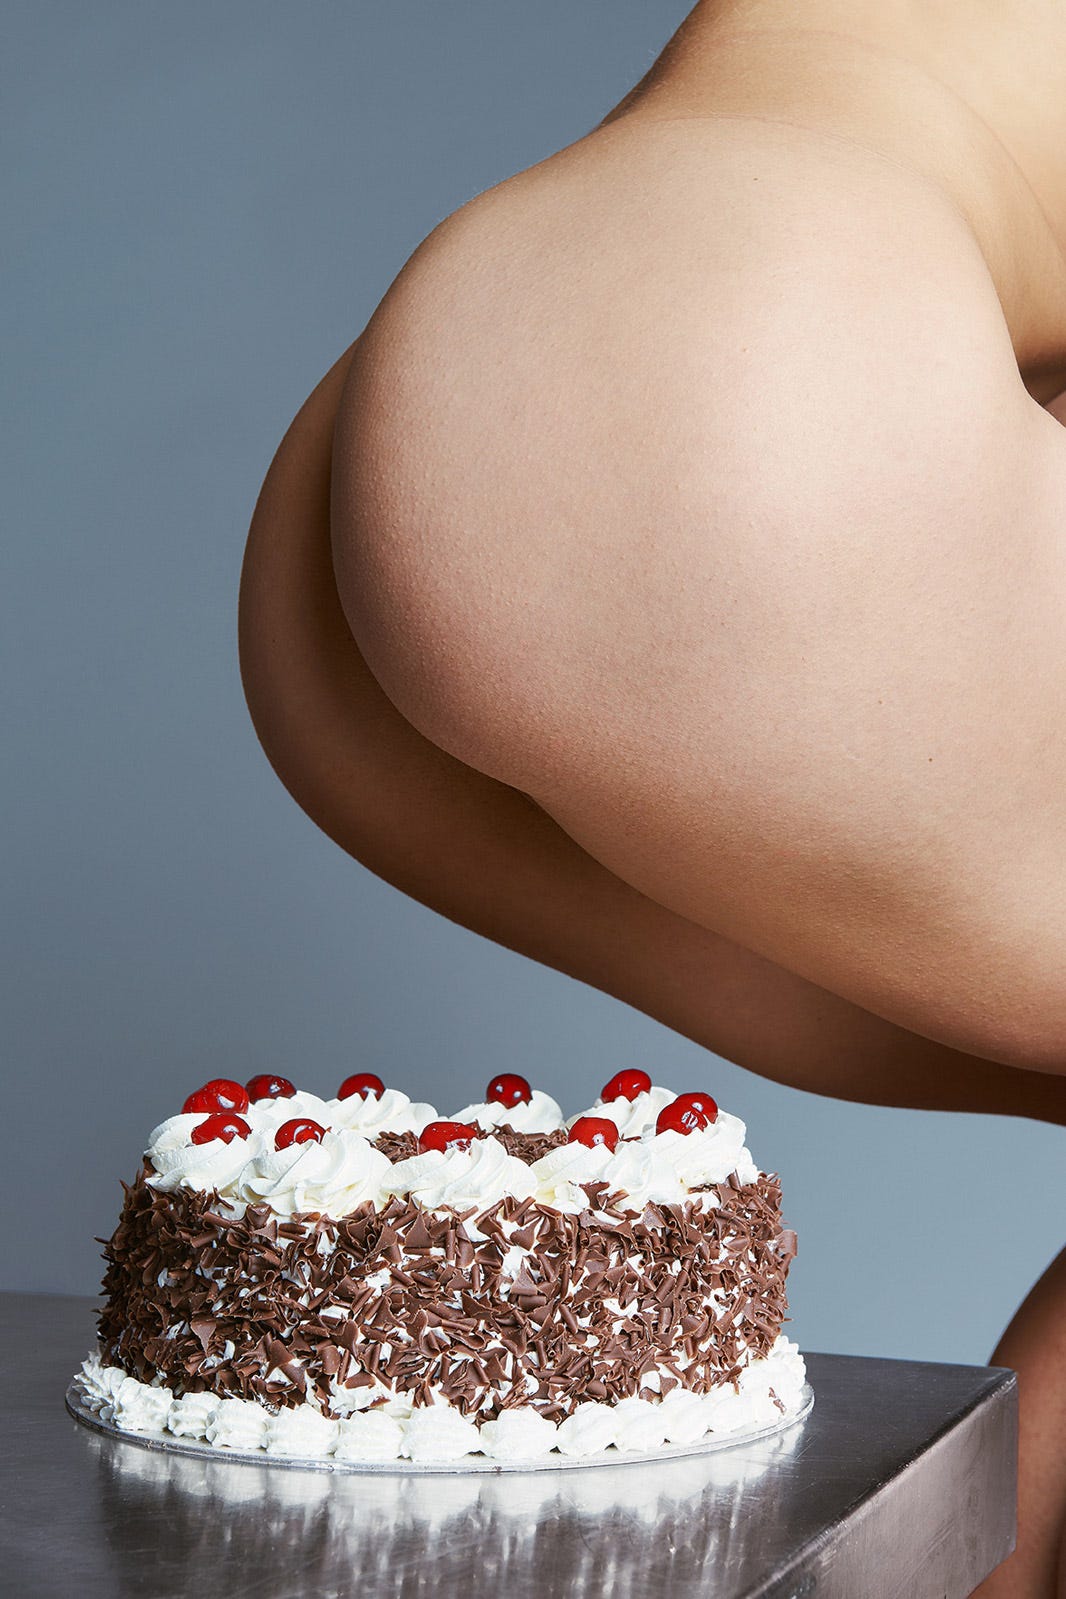 Eating cake ass